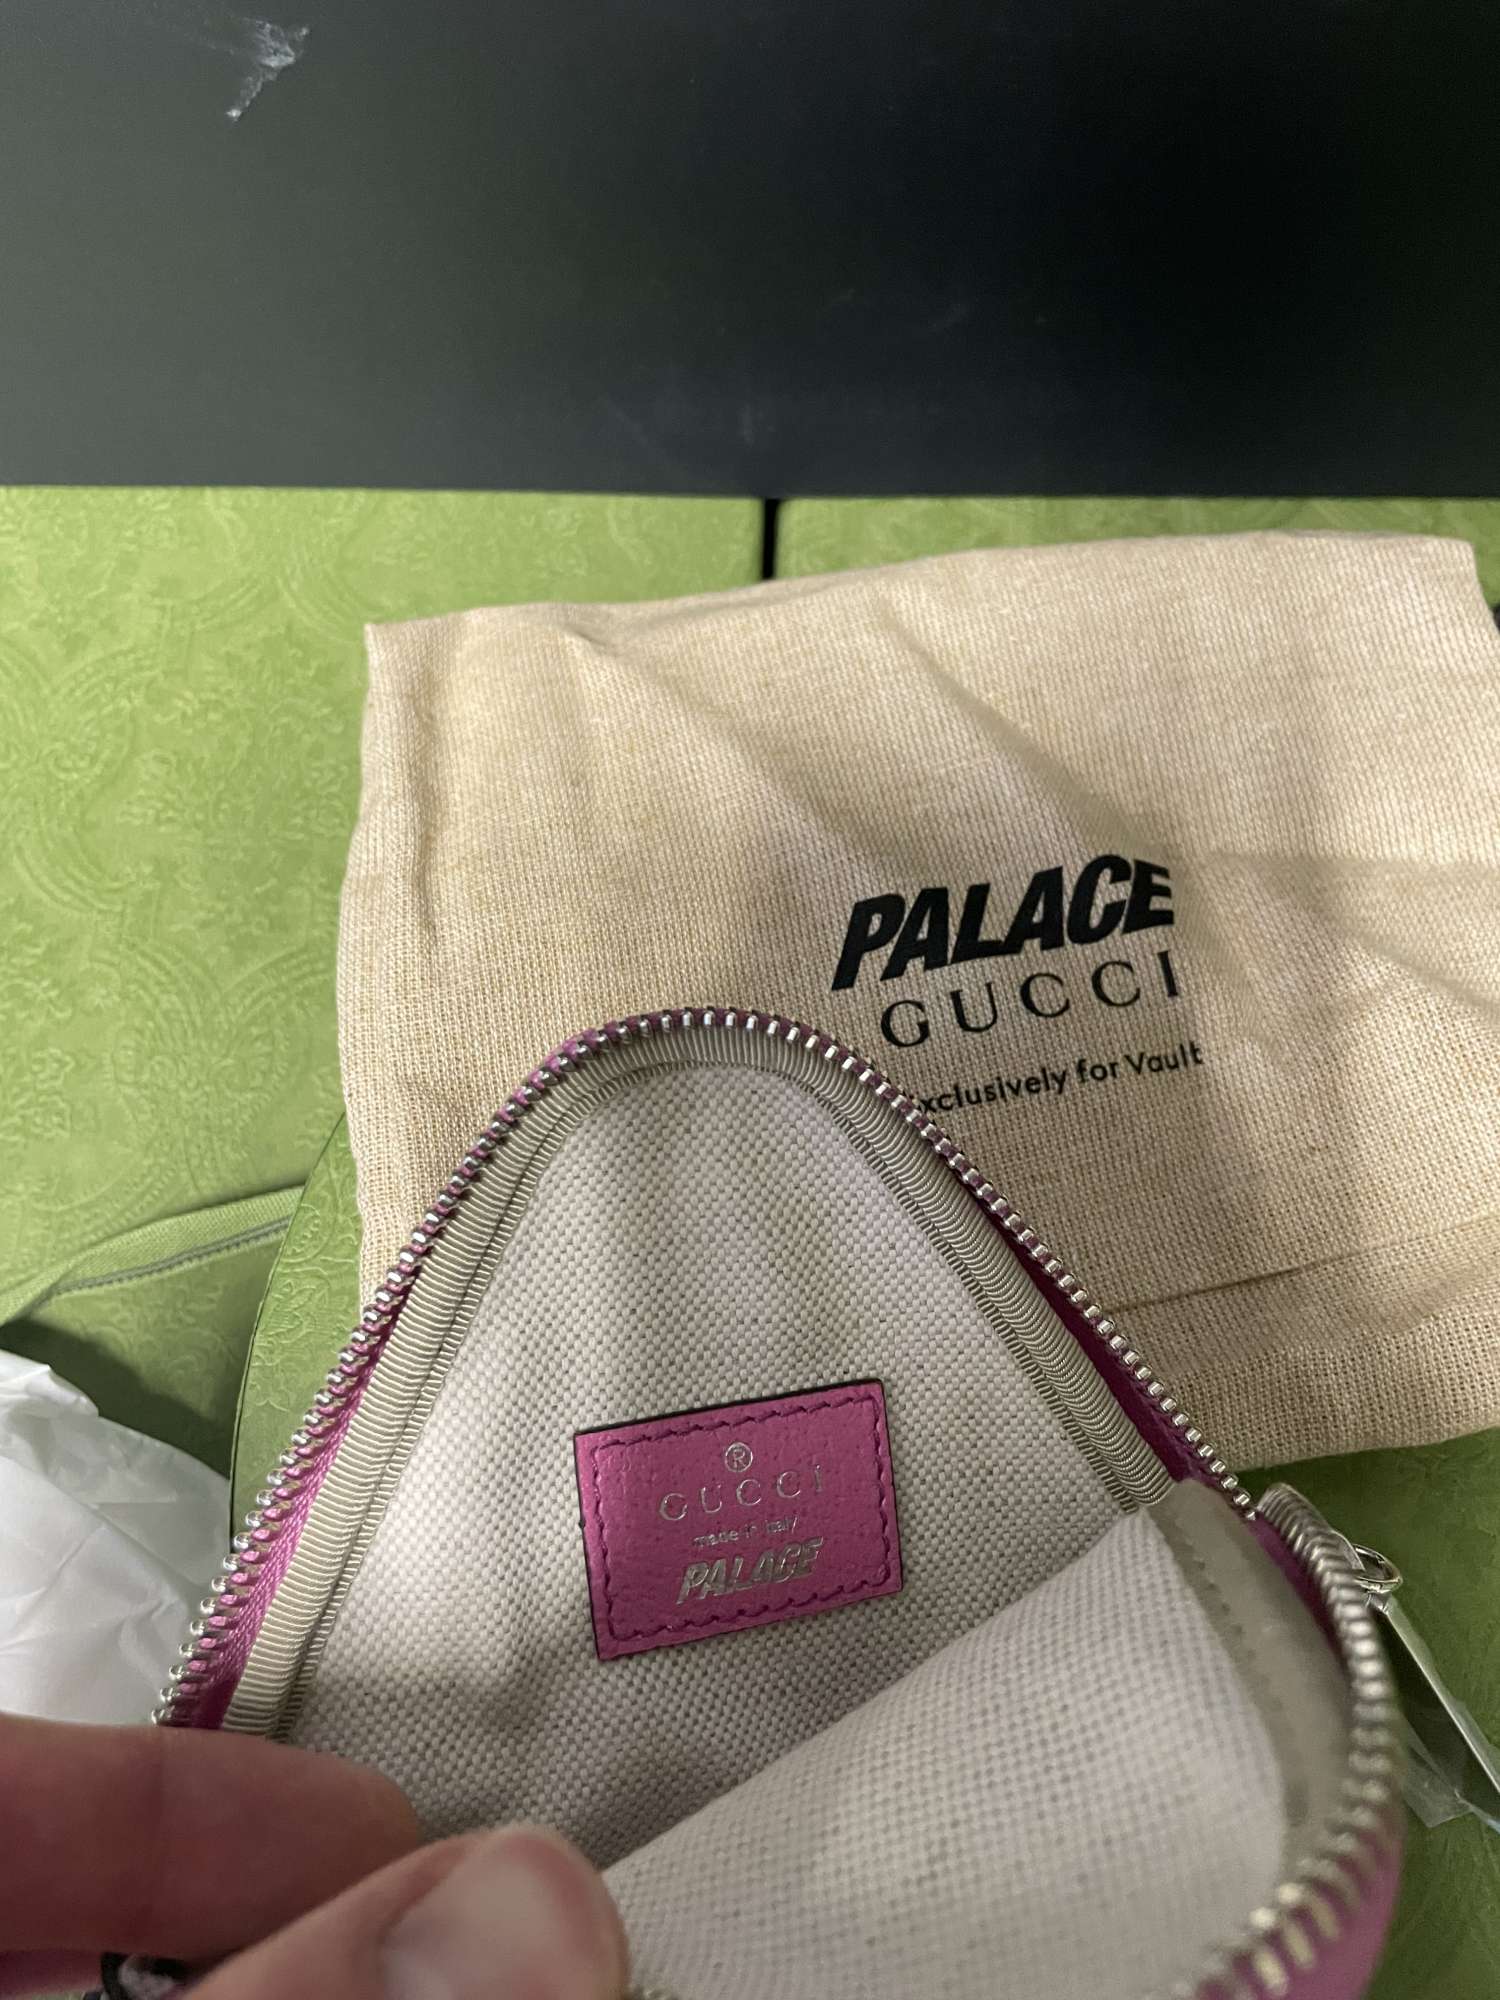 Gucci x palace peňaženka